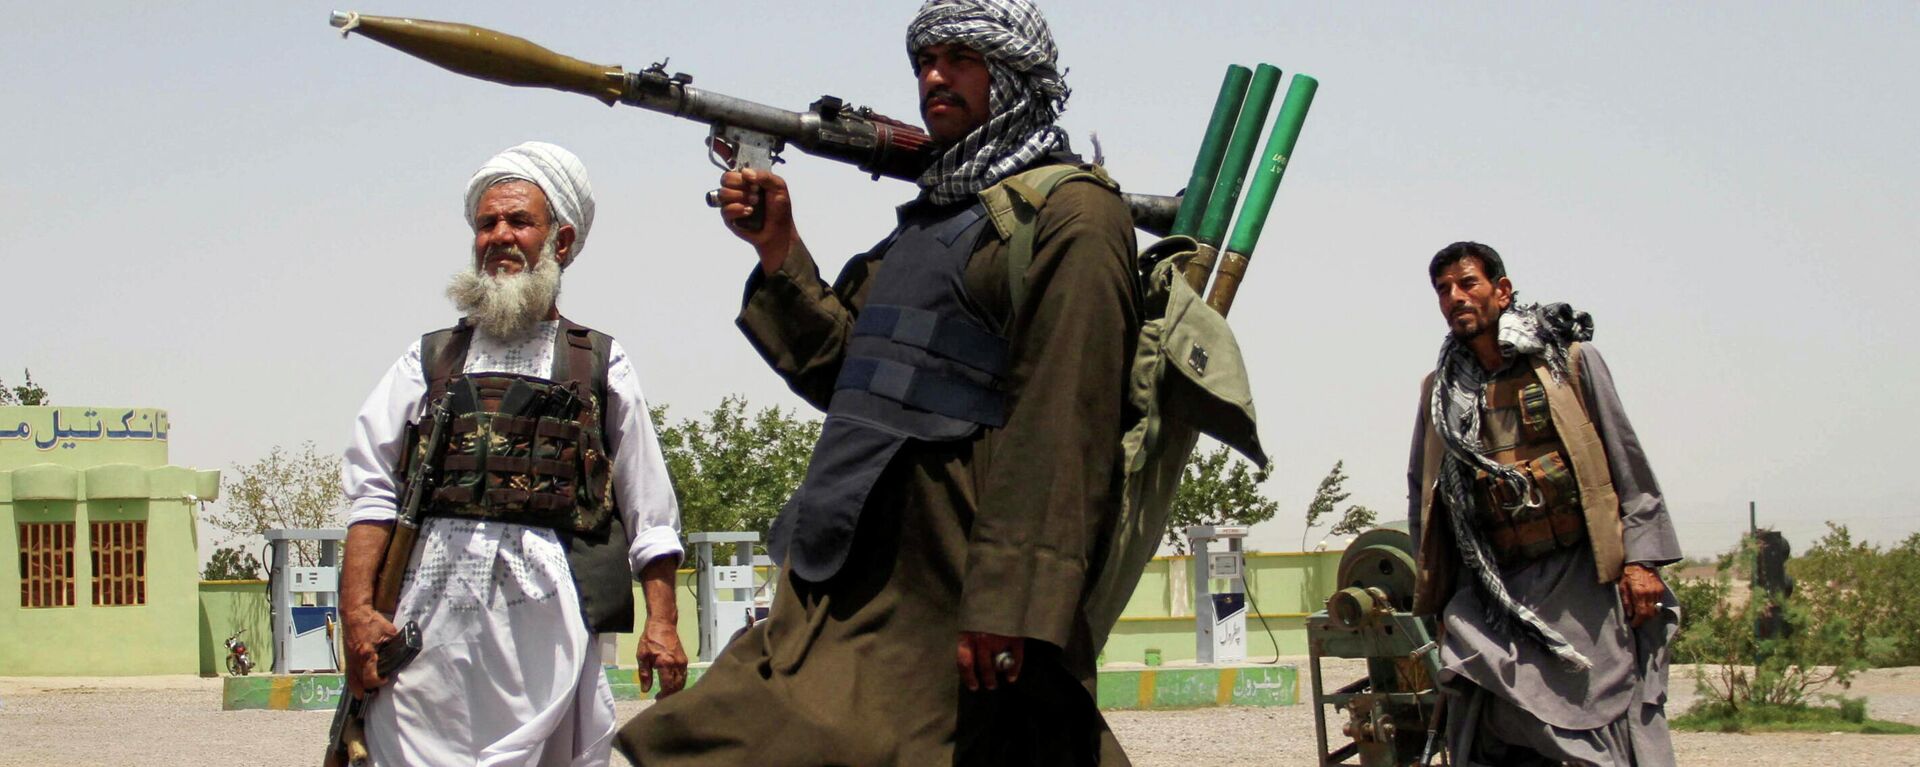  Бывшие моджахеды держат оружие, чтобы поддержать афганские силы в их борьбе против талибов - Sputnik Тоҷикистон, 1920, 17.10.2021